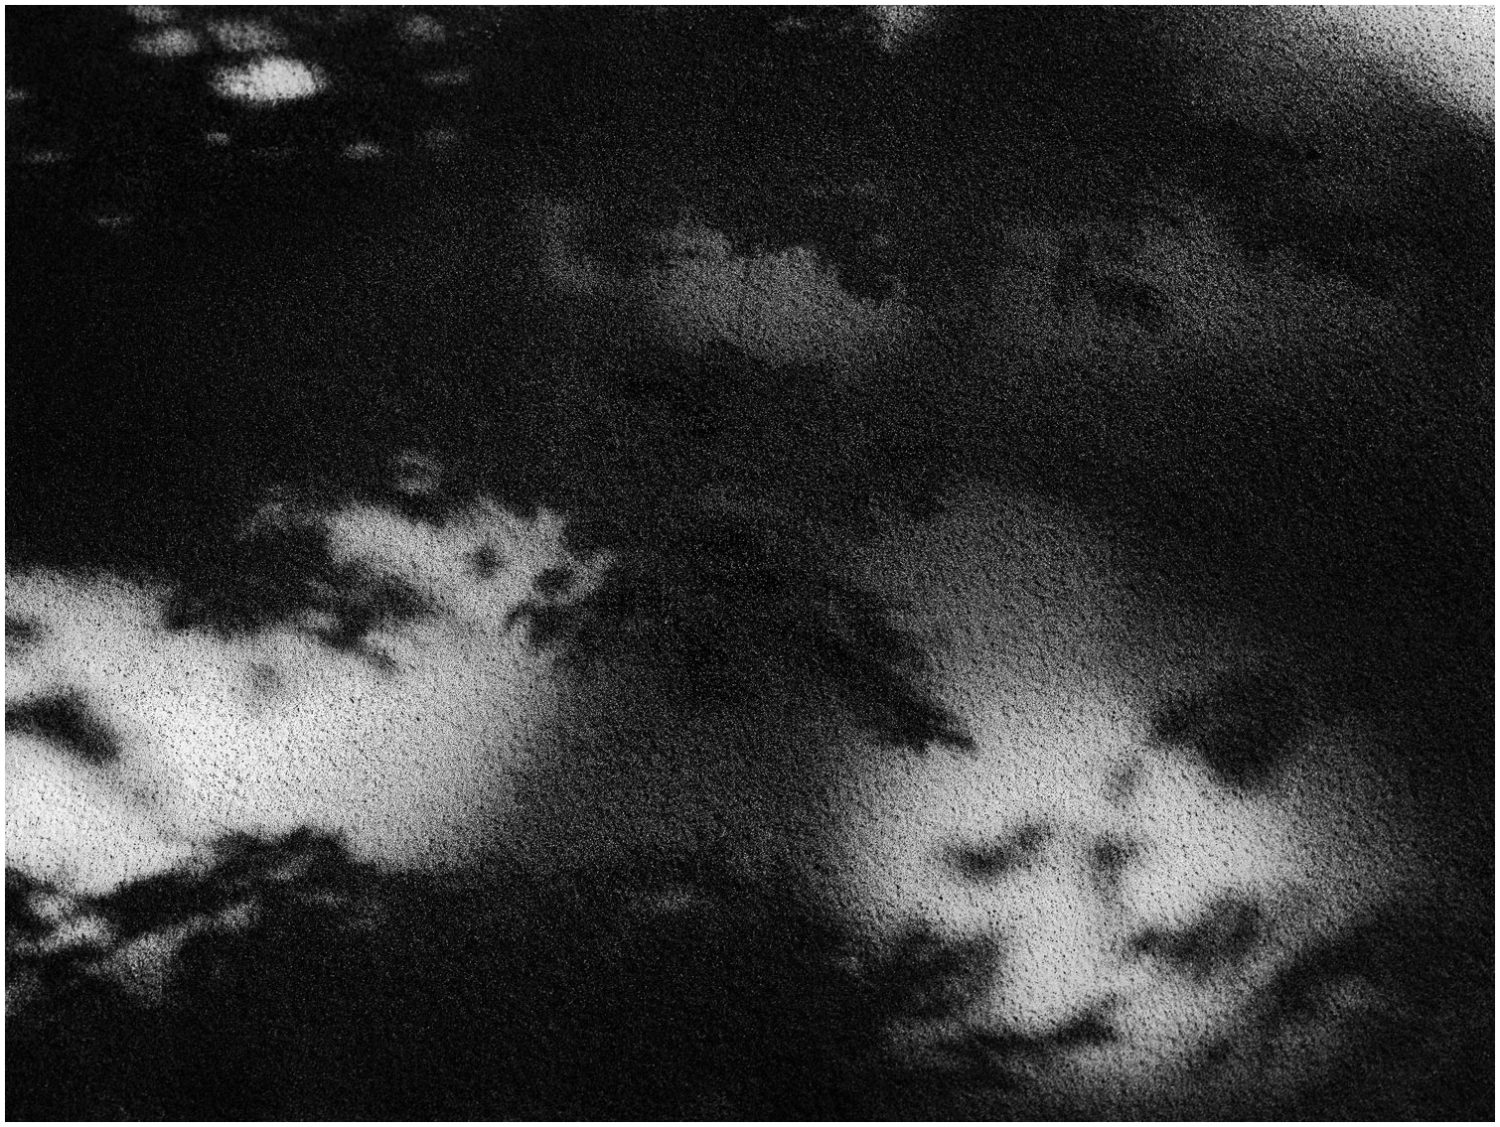 Schwarz-Weiß_Fotografie: Schatten von Pflanzenblättern und Lichtflecke auf Waldboden